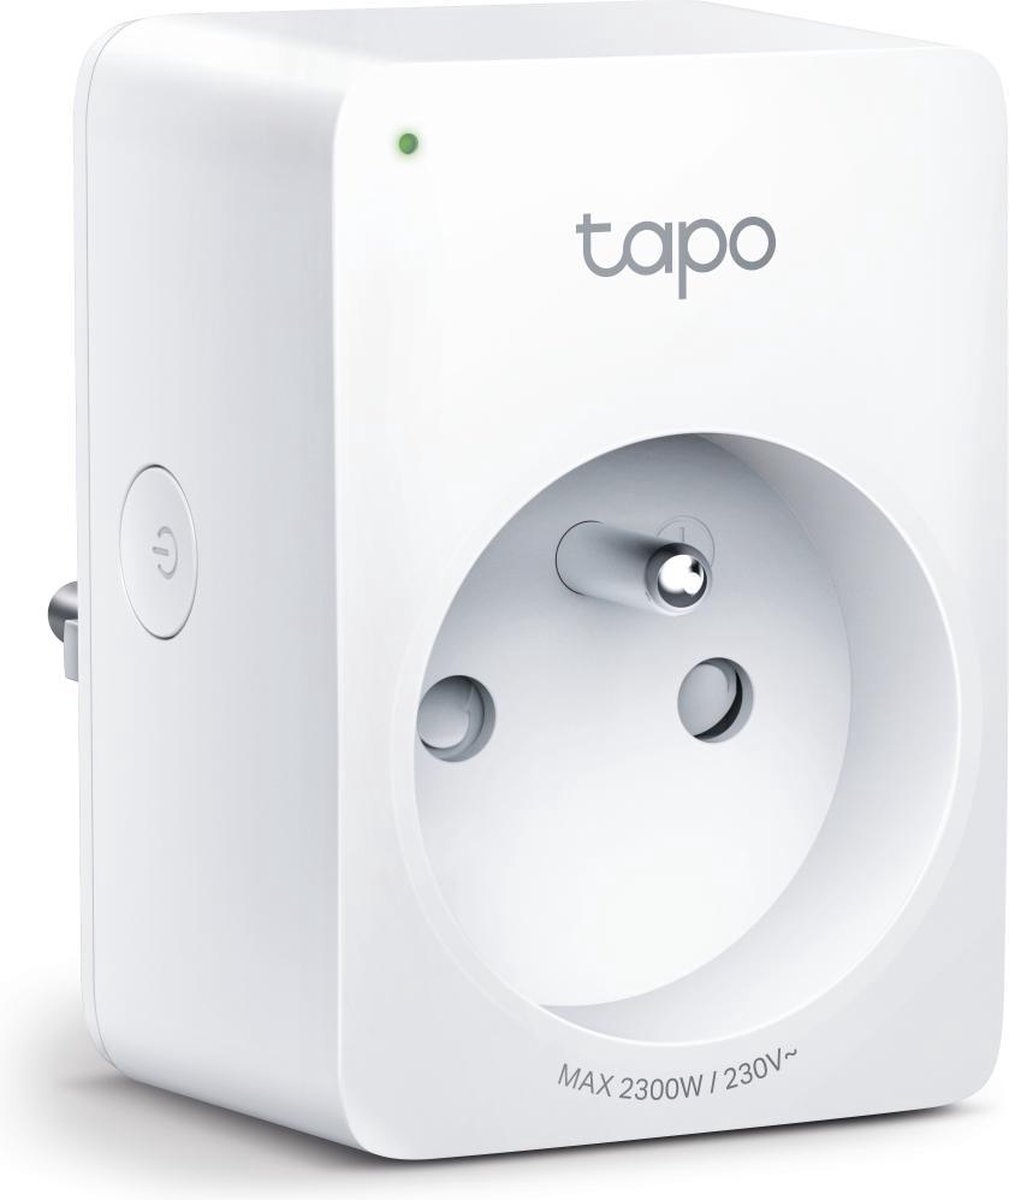 Chytrá zásuvka TP-Link Tapo P110 regulace 230V přes IP, Cloud, WiFi, monitoring spotřeby